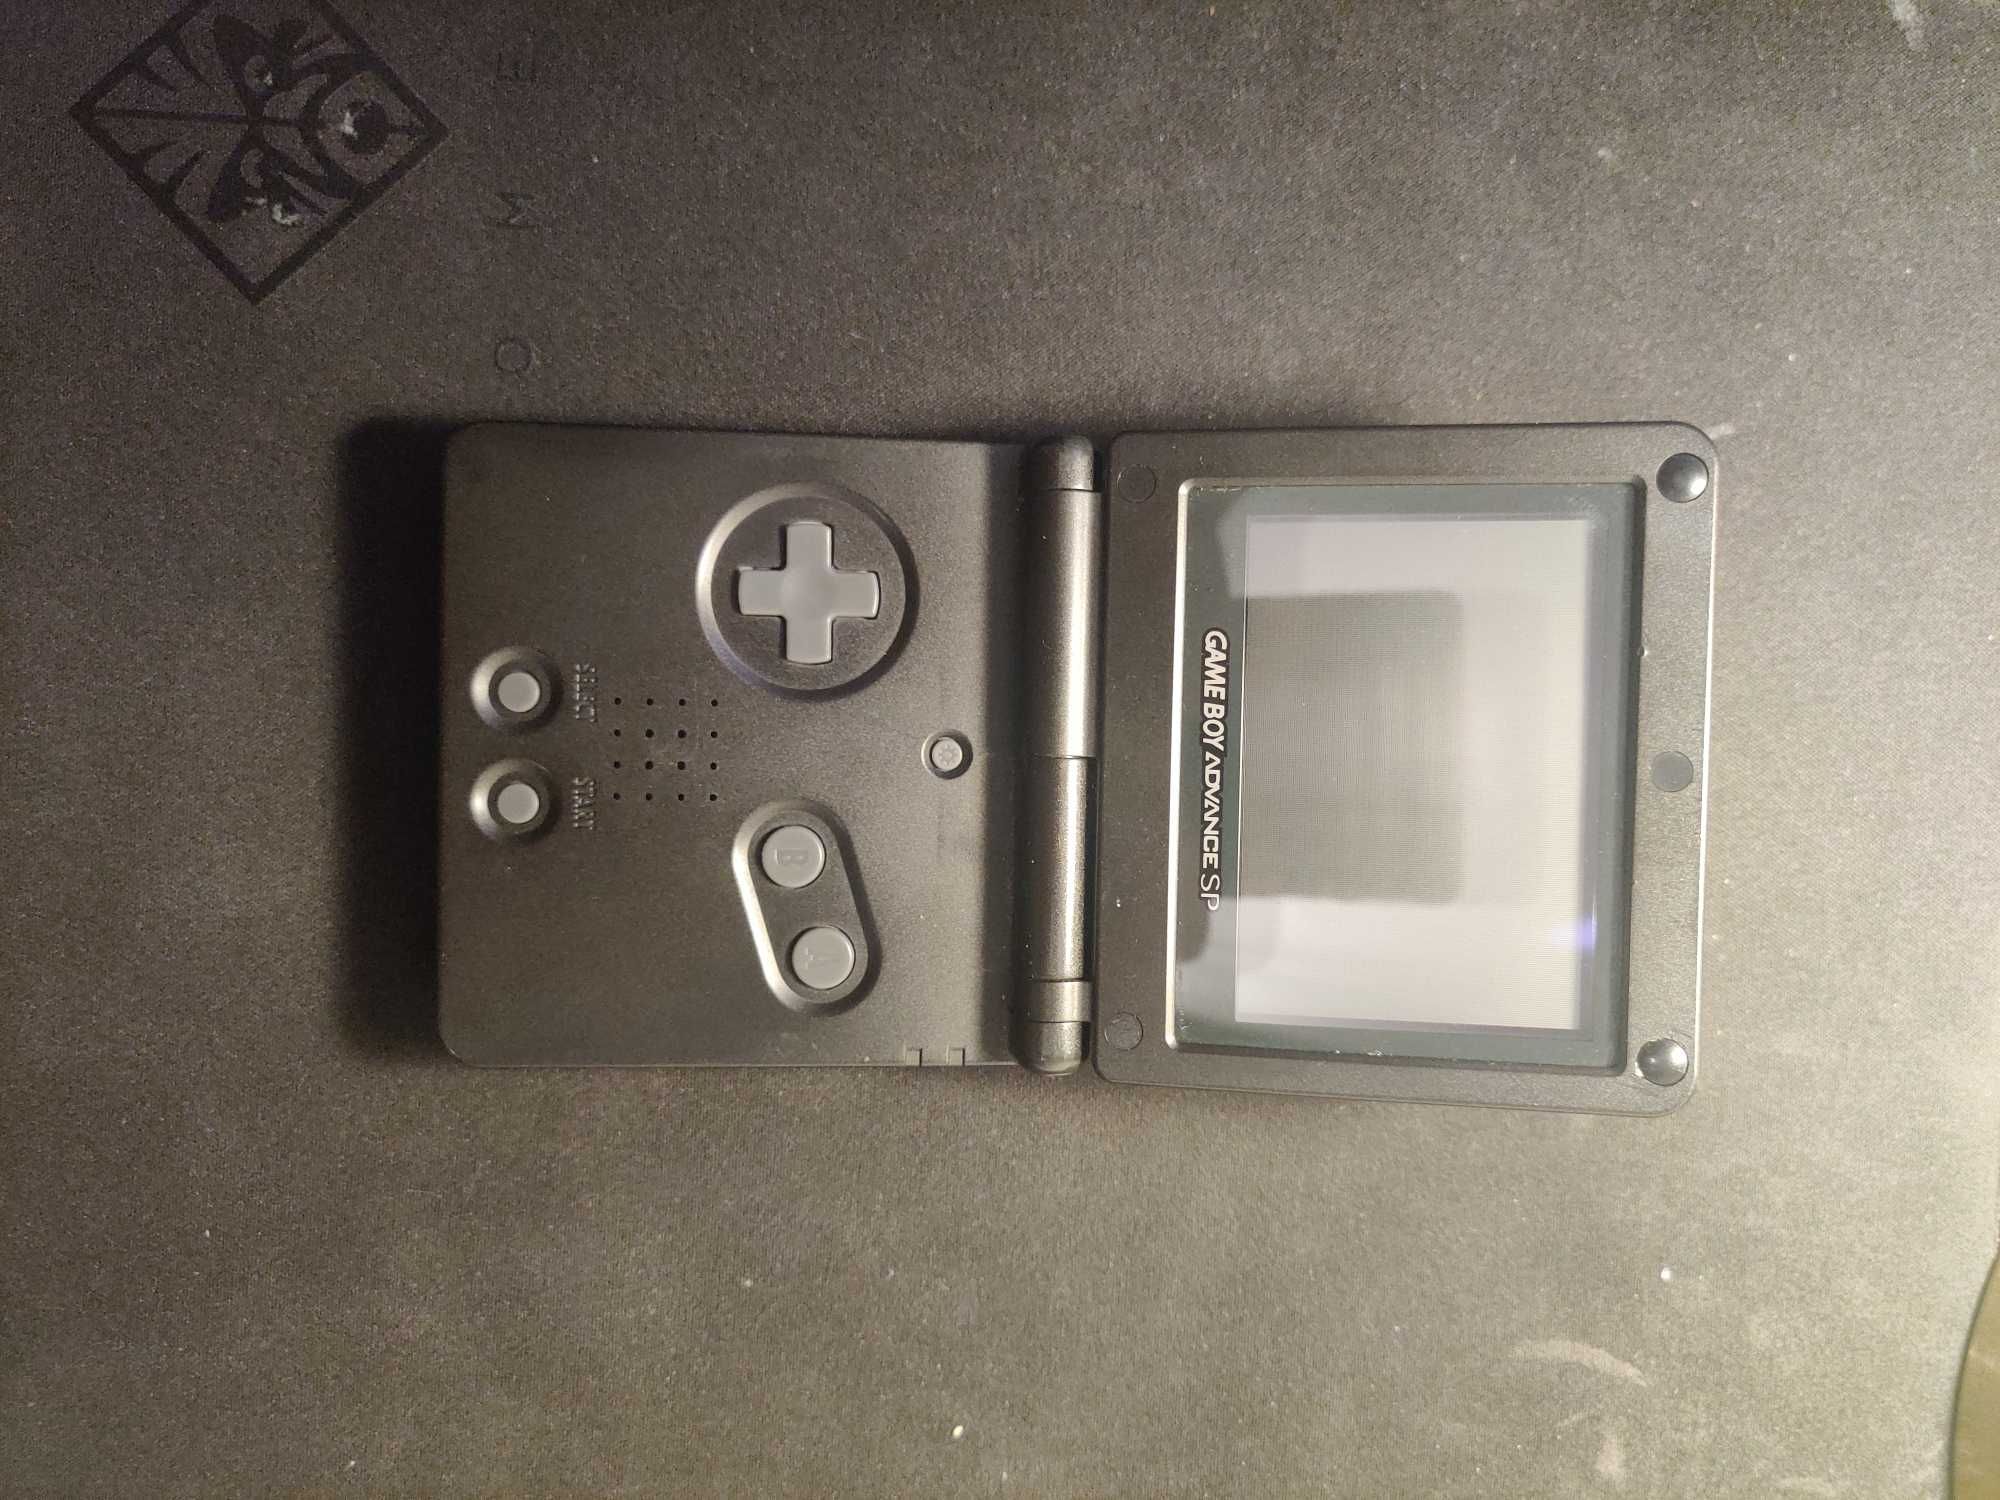 Nintendo Gameboy Advance SP (Otimas condições) Jogo opicional